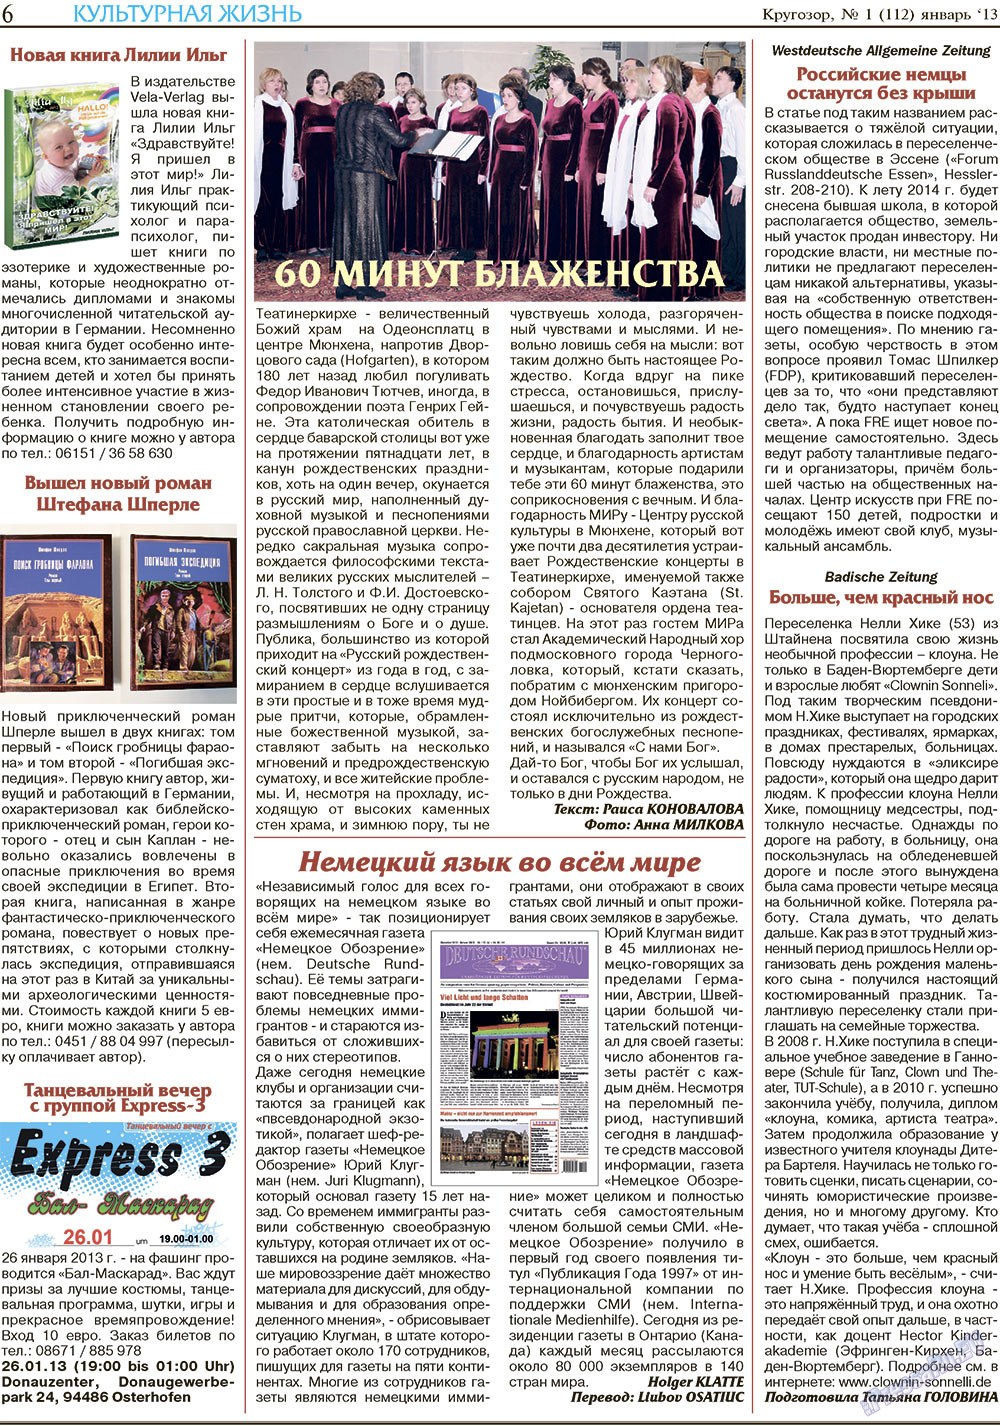 Кругозор, газета. 2013 №1 стр.6